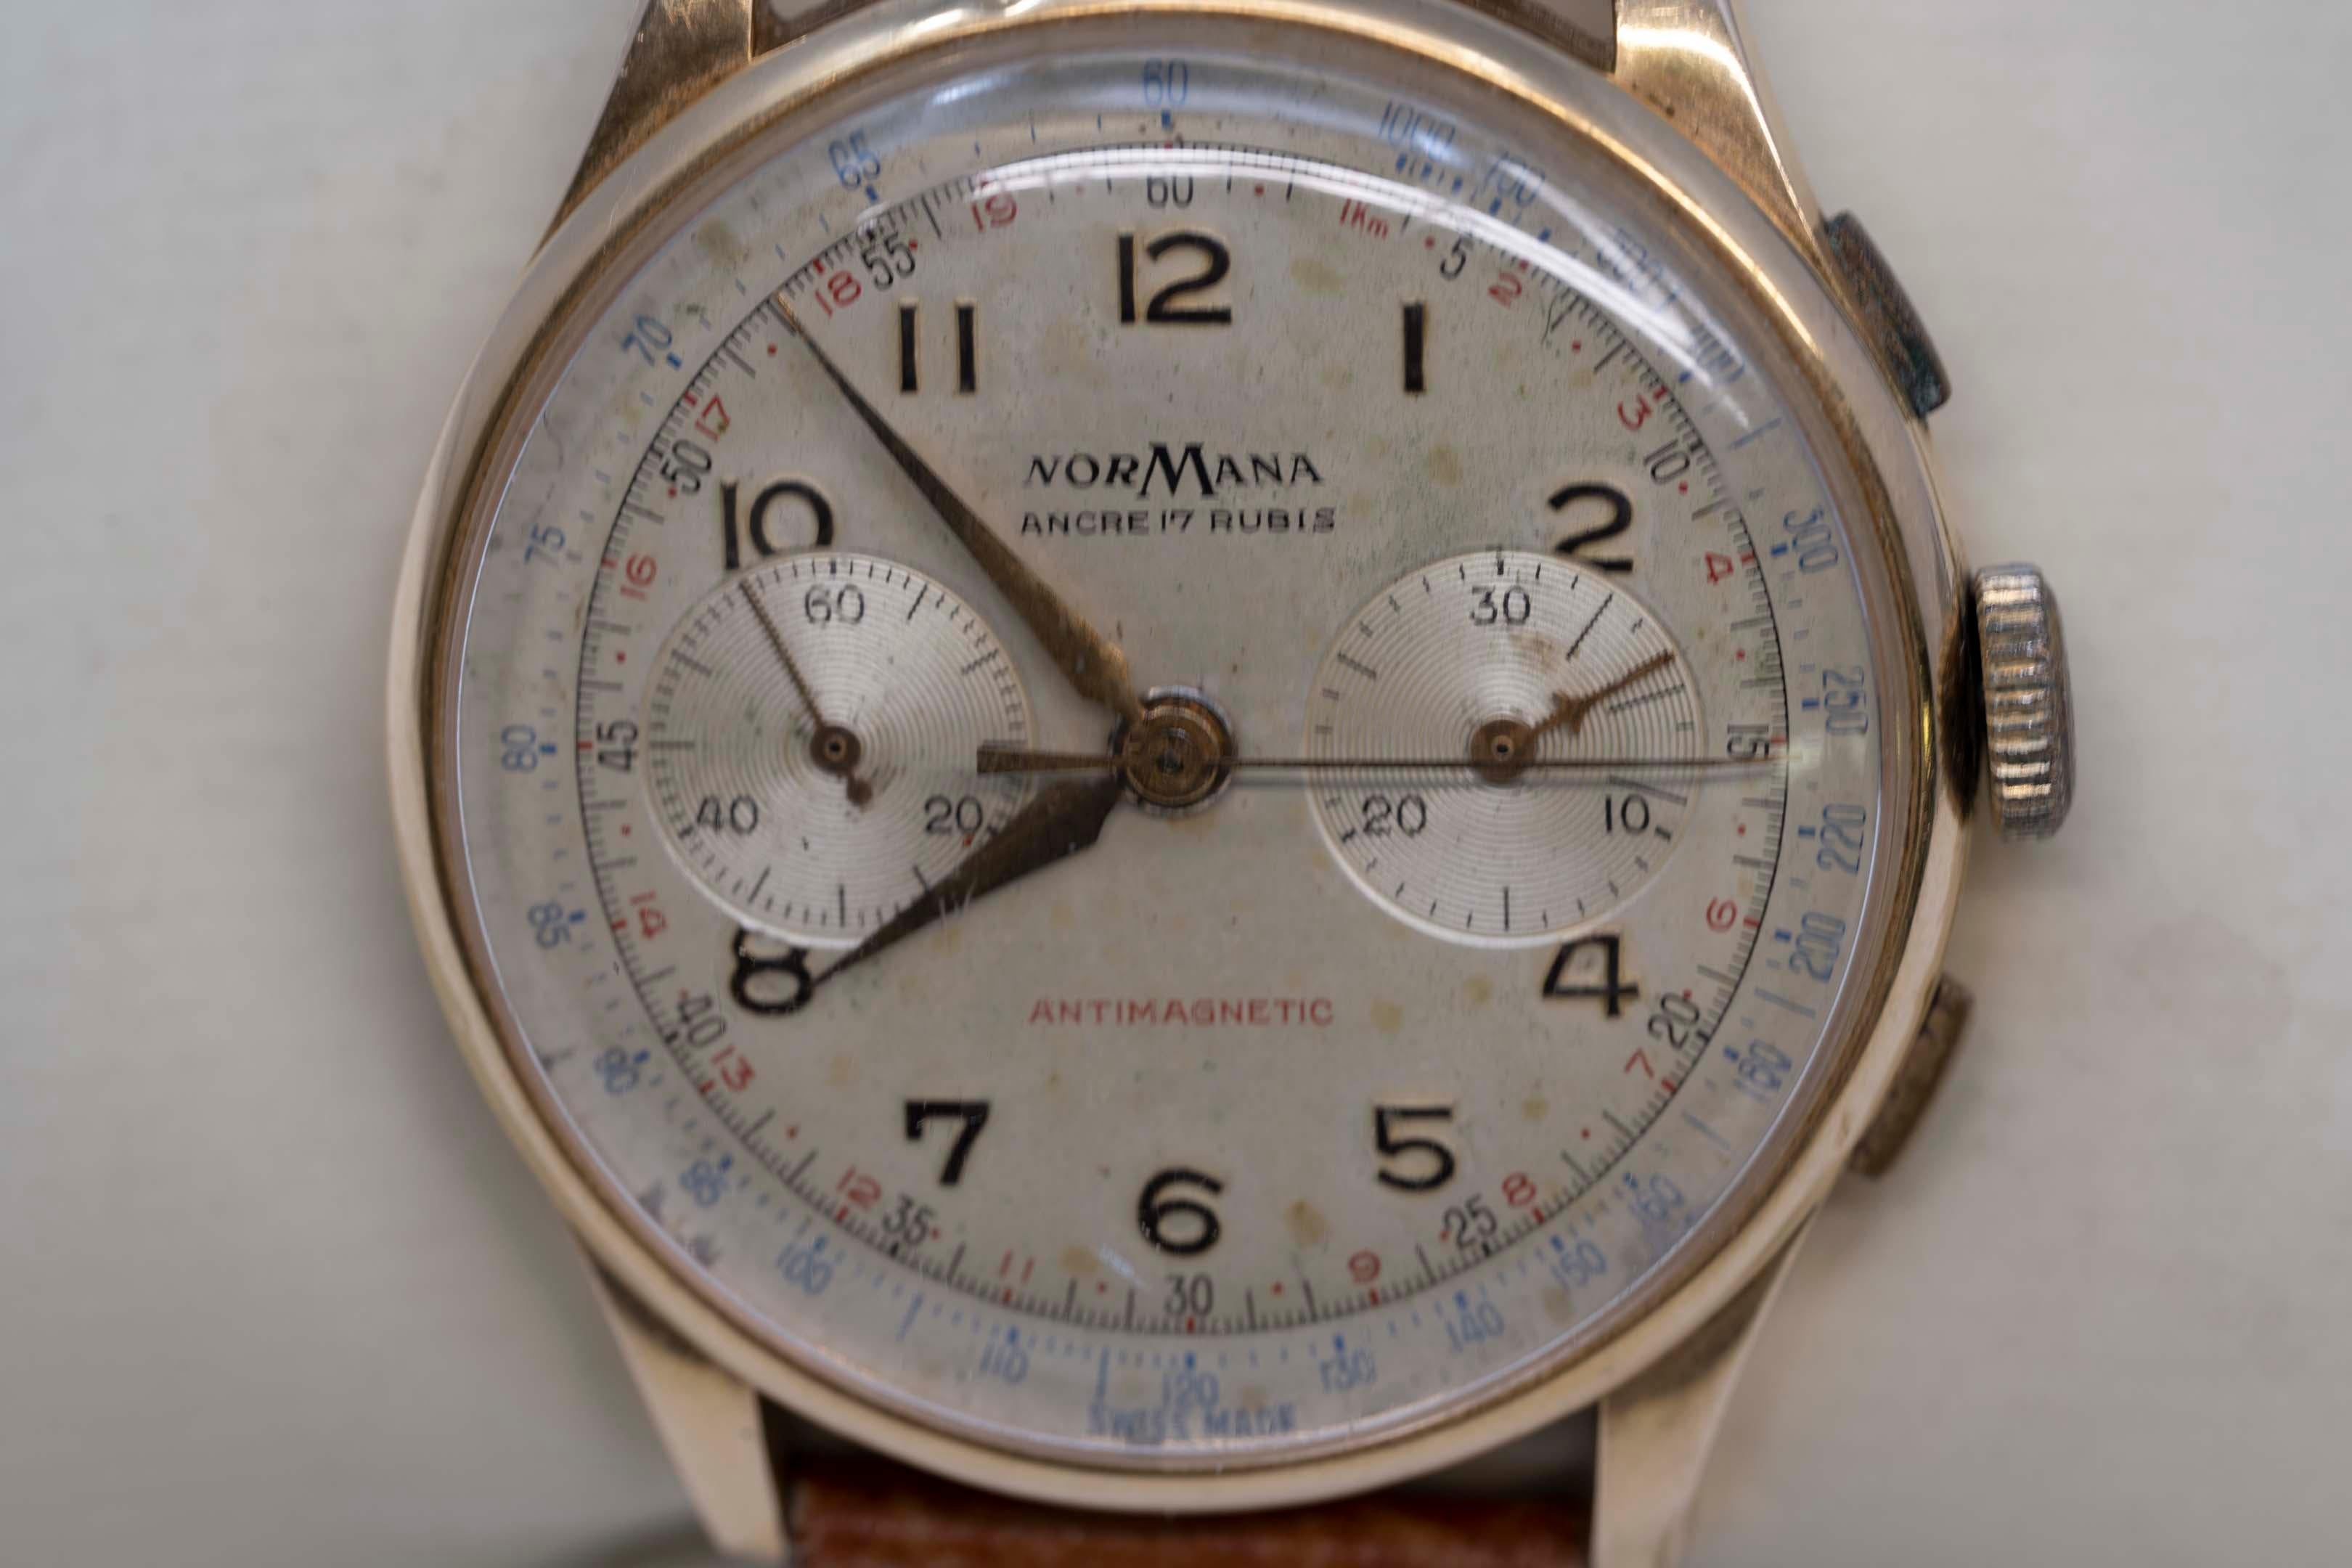 Eine Vintage-Armbanduhr für Männer mit der Bezeichnung NorMana. 18k (750, gestempelt), mechanisches Uhrwerk, Chronometer. Tissot braun gefärbtes Armband. Wiegt 49,1 Gramm. 38 mm Gehäuse ohne Krone. Crown ist nicht das Original. 
